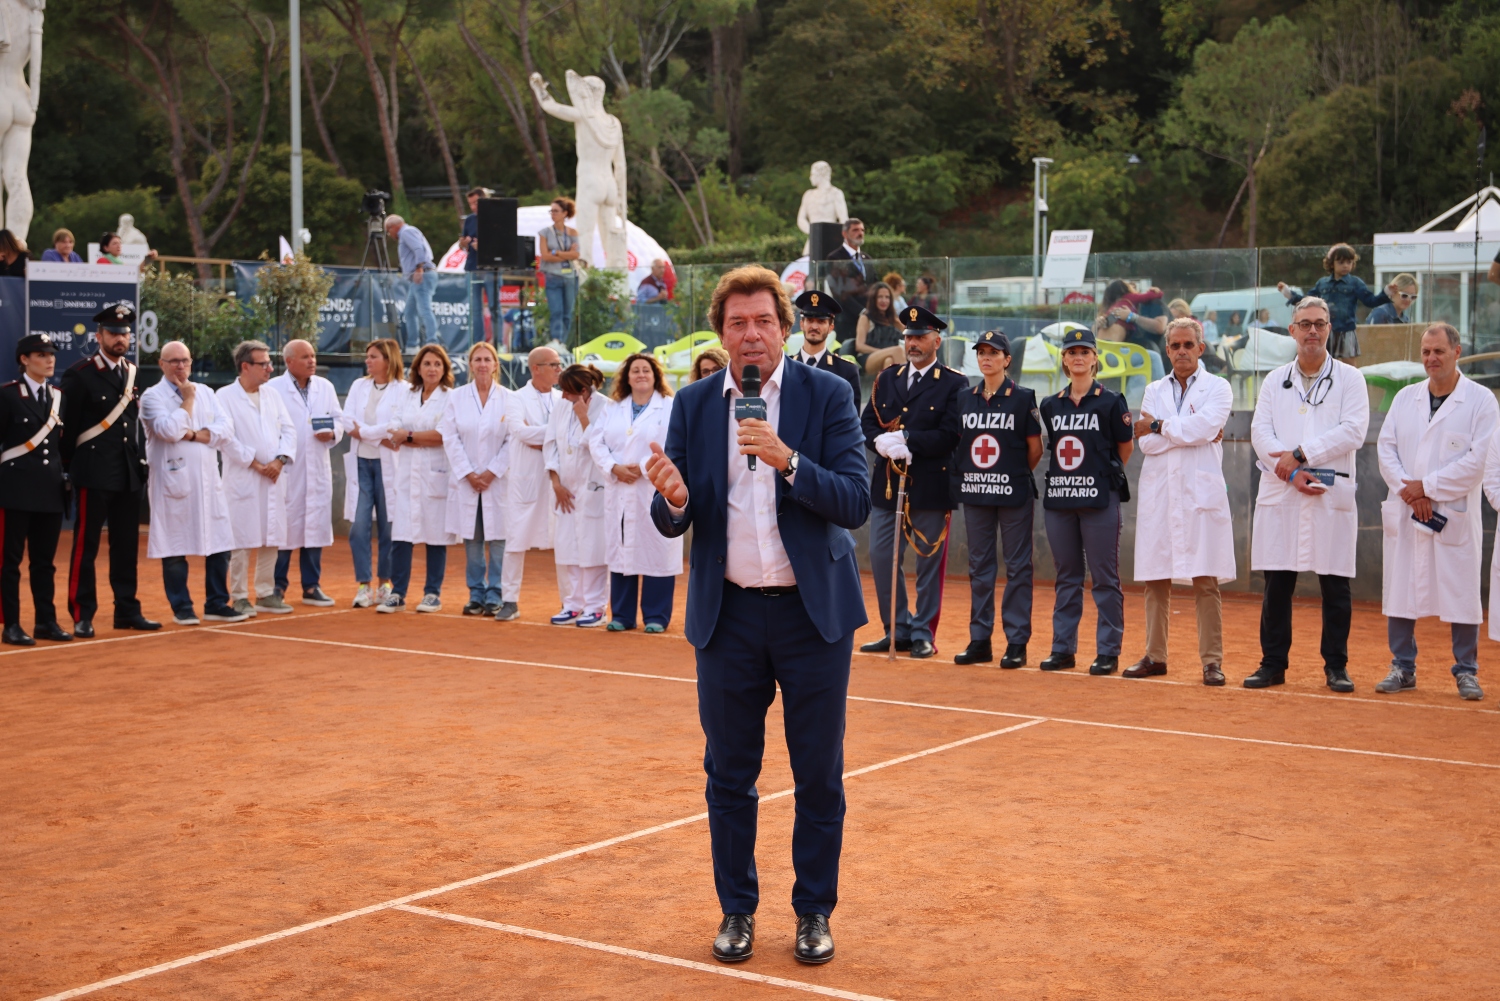 tennis & friends, l'intervento del Prof. Meneschincheri